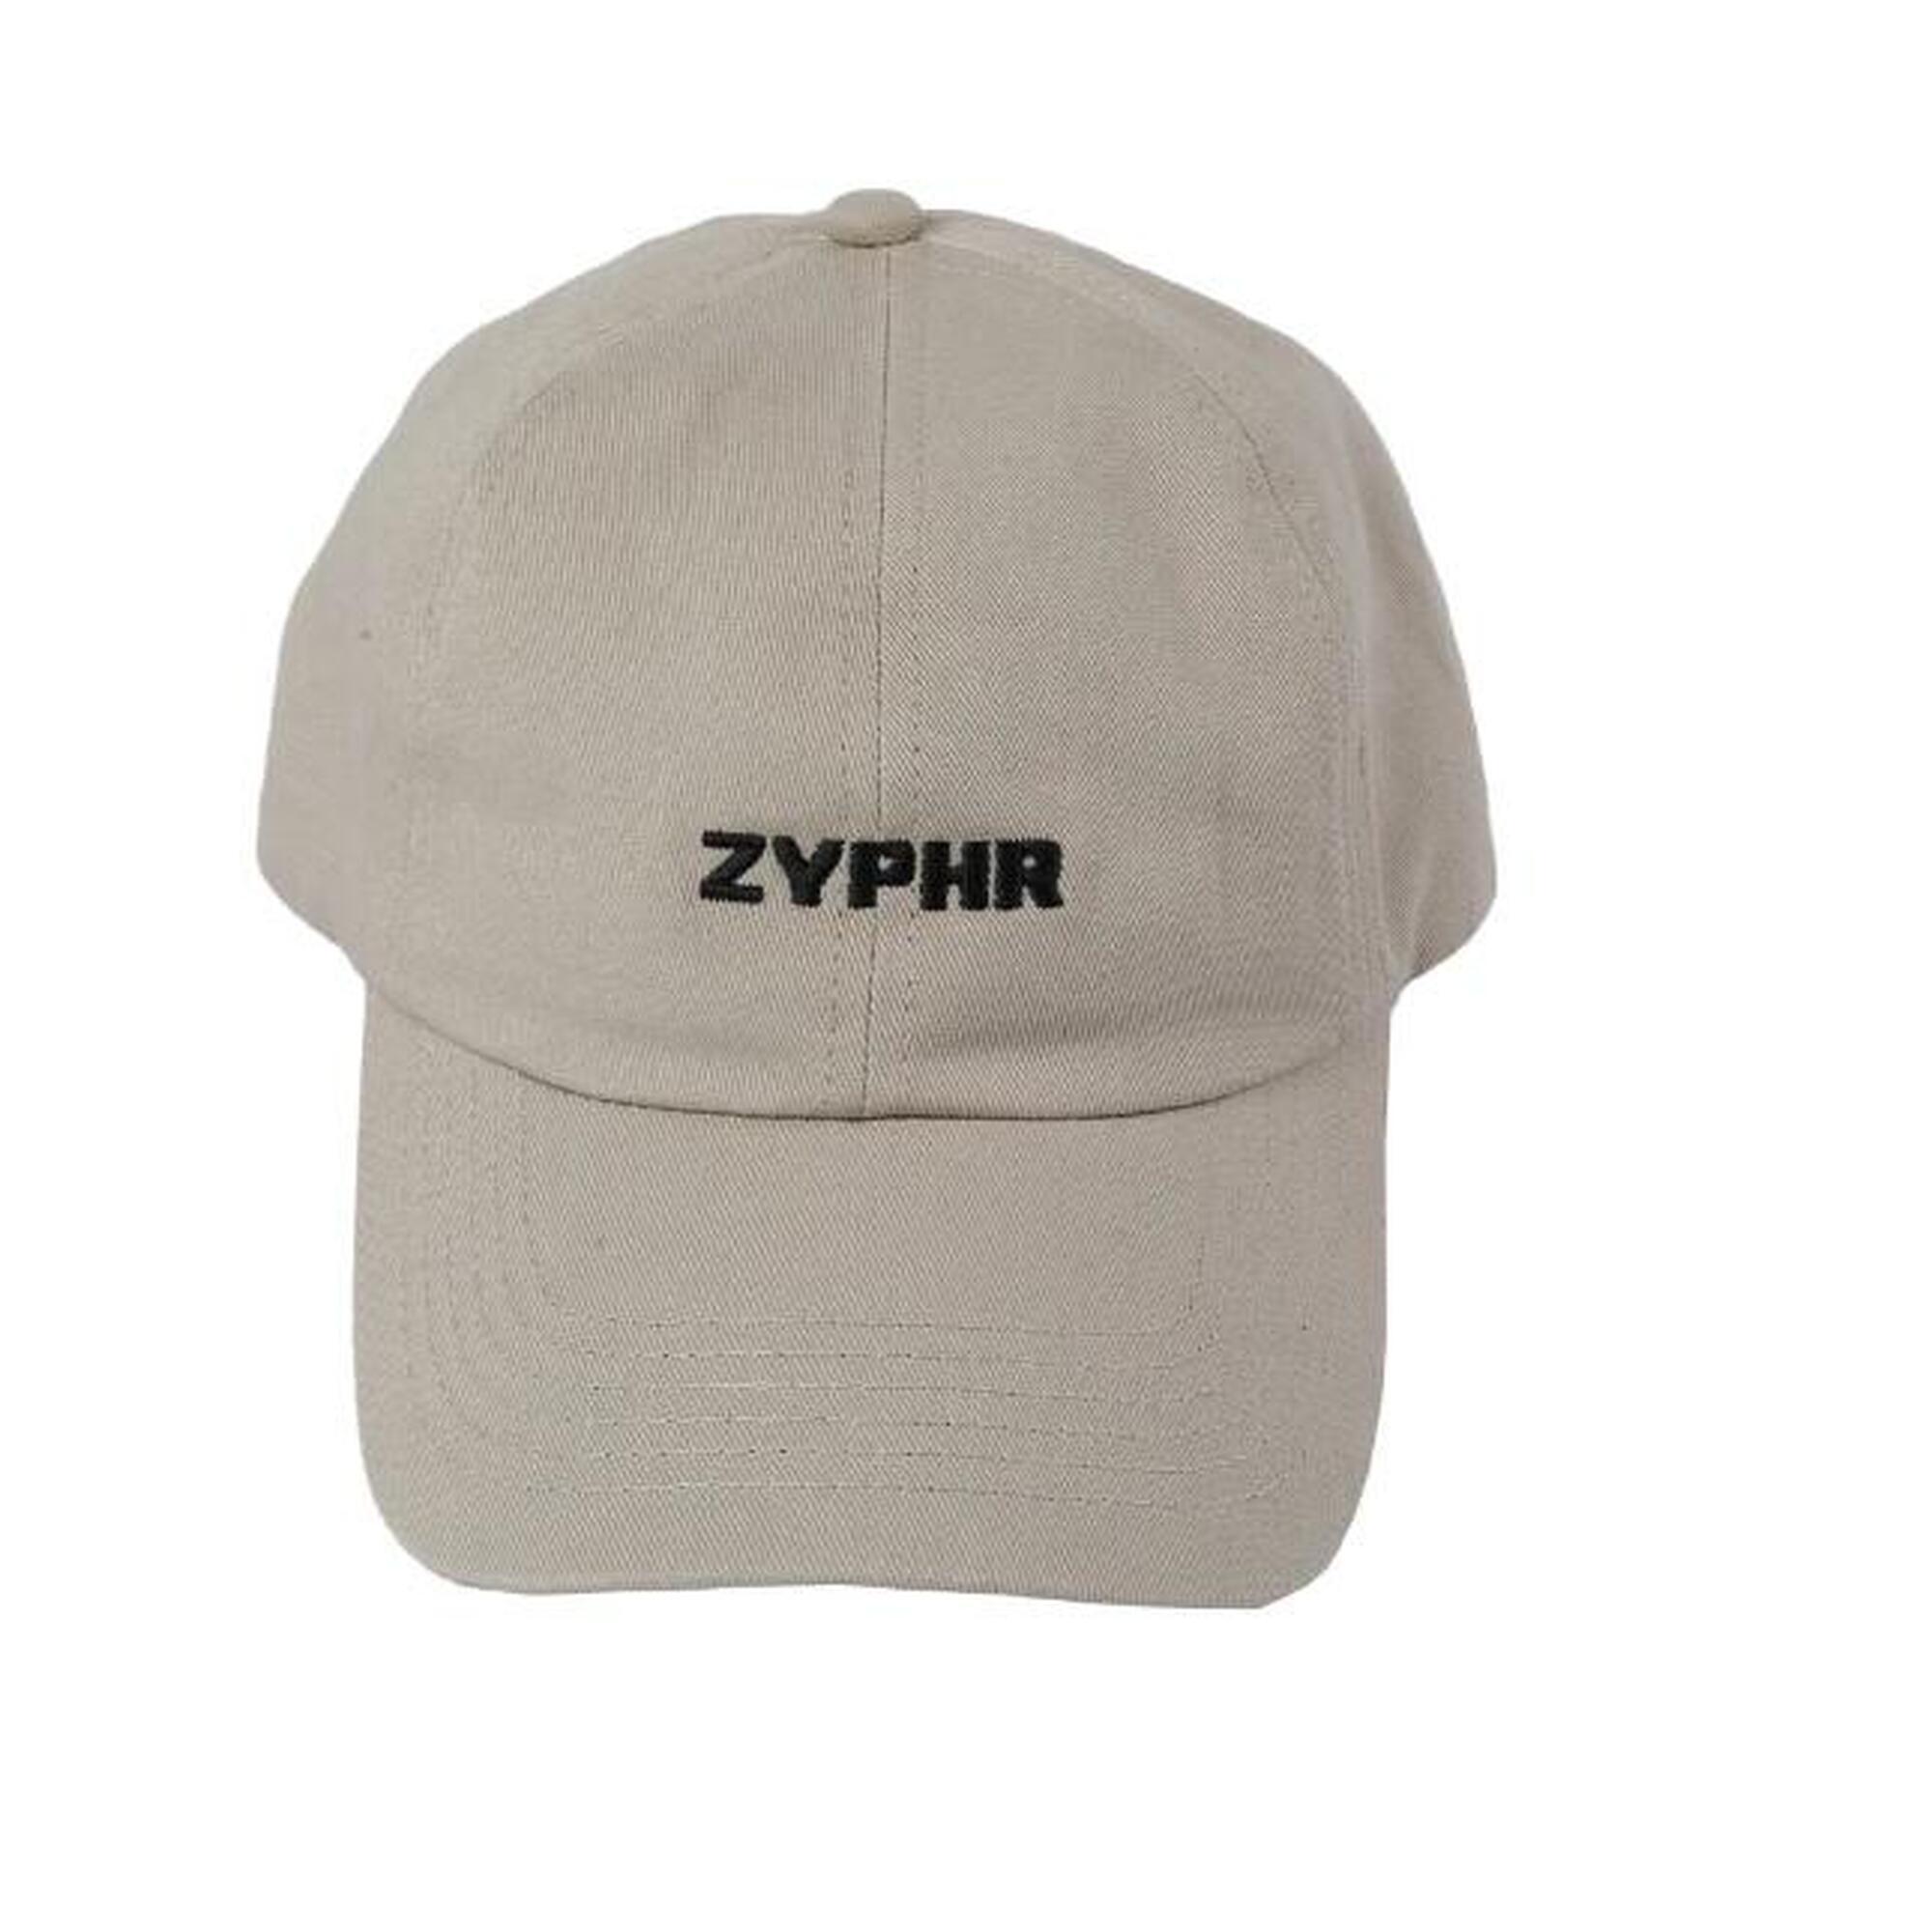 "Zyphr" Logo Hiking Cap - Beige